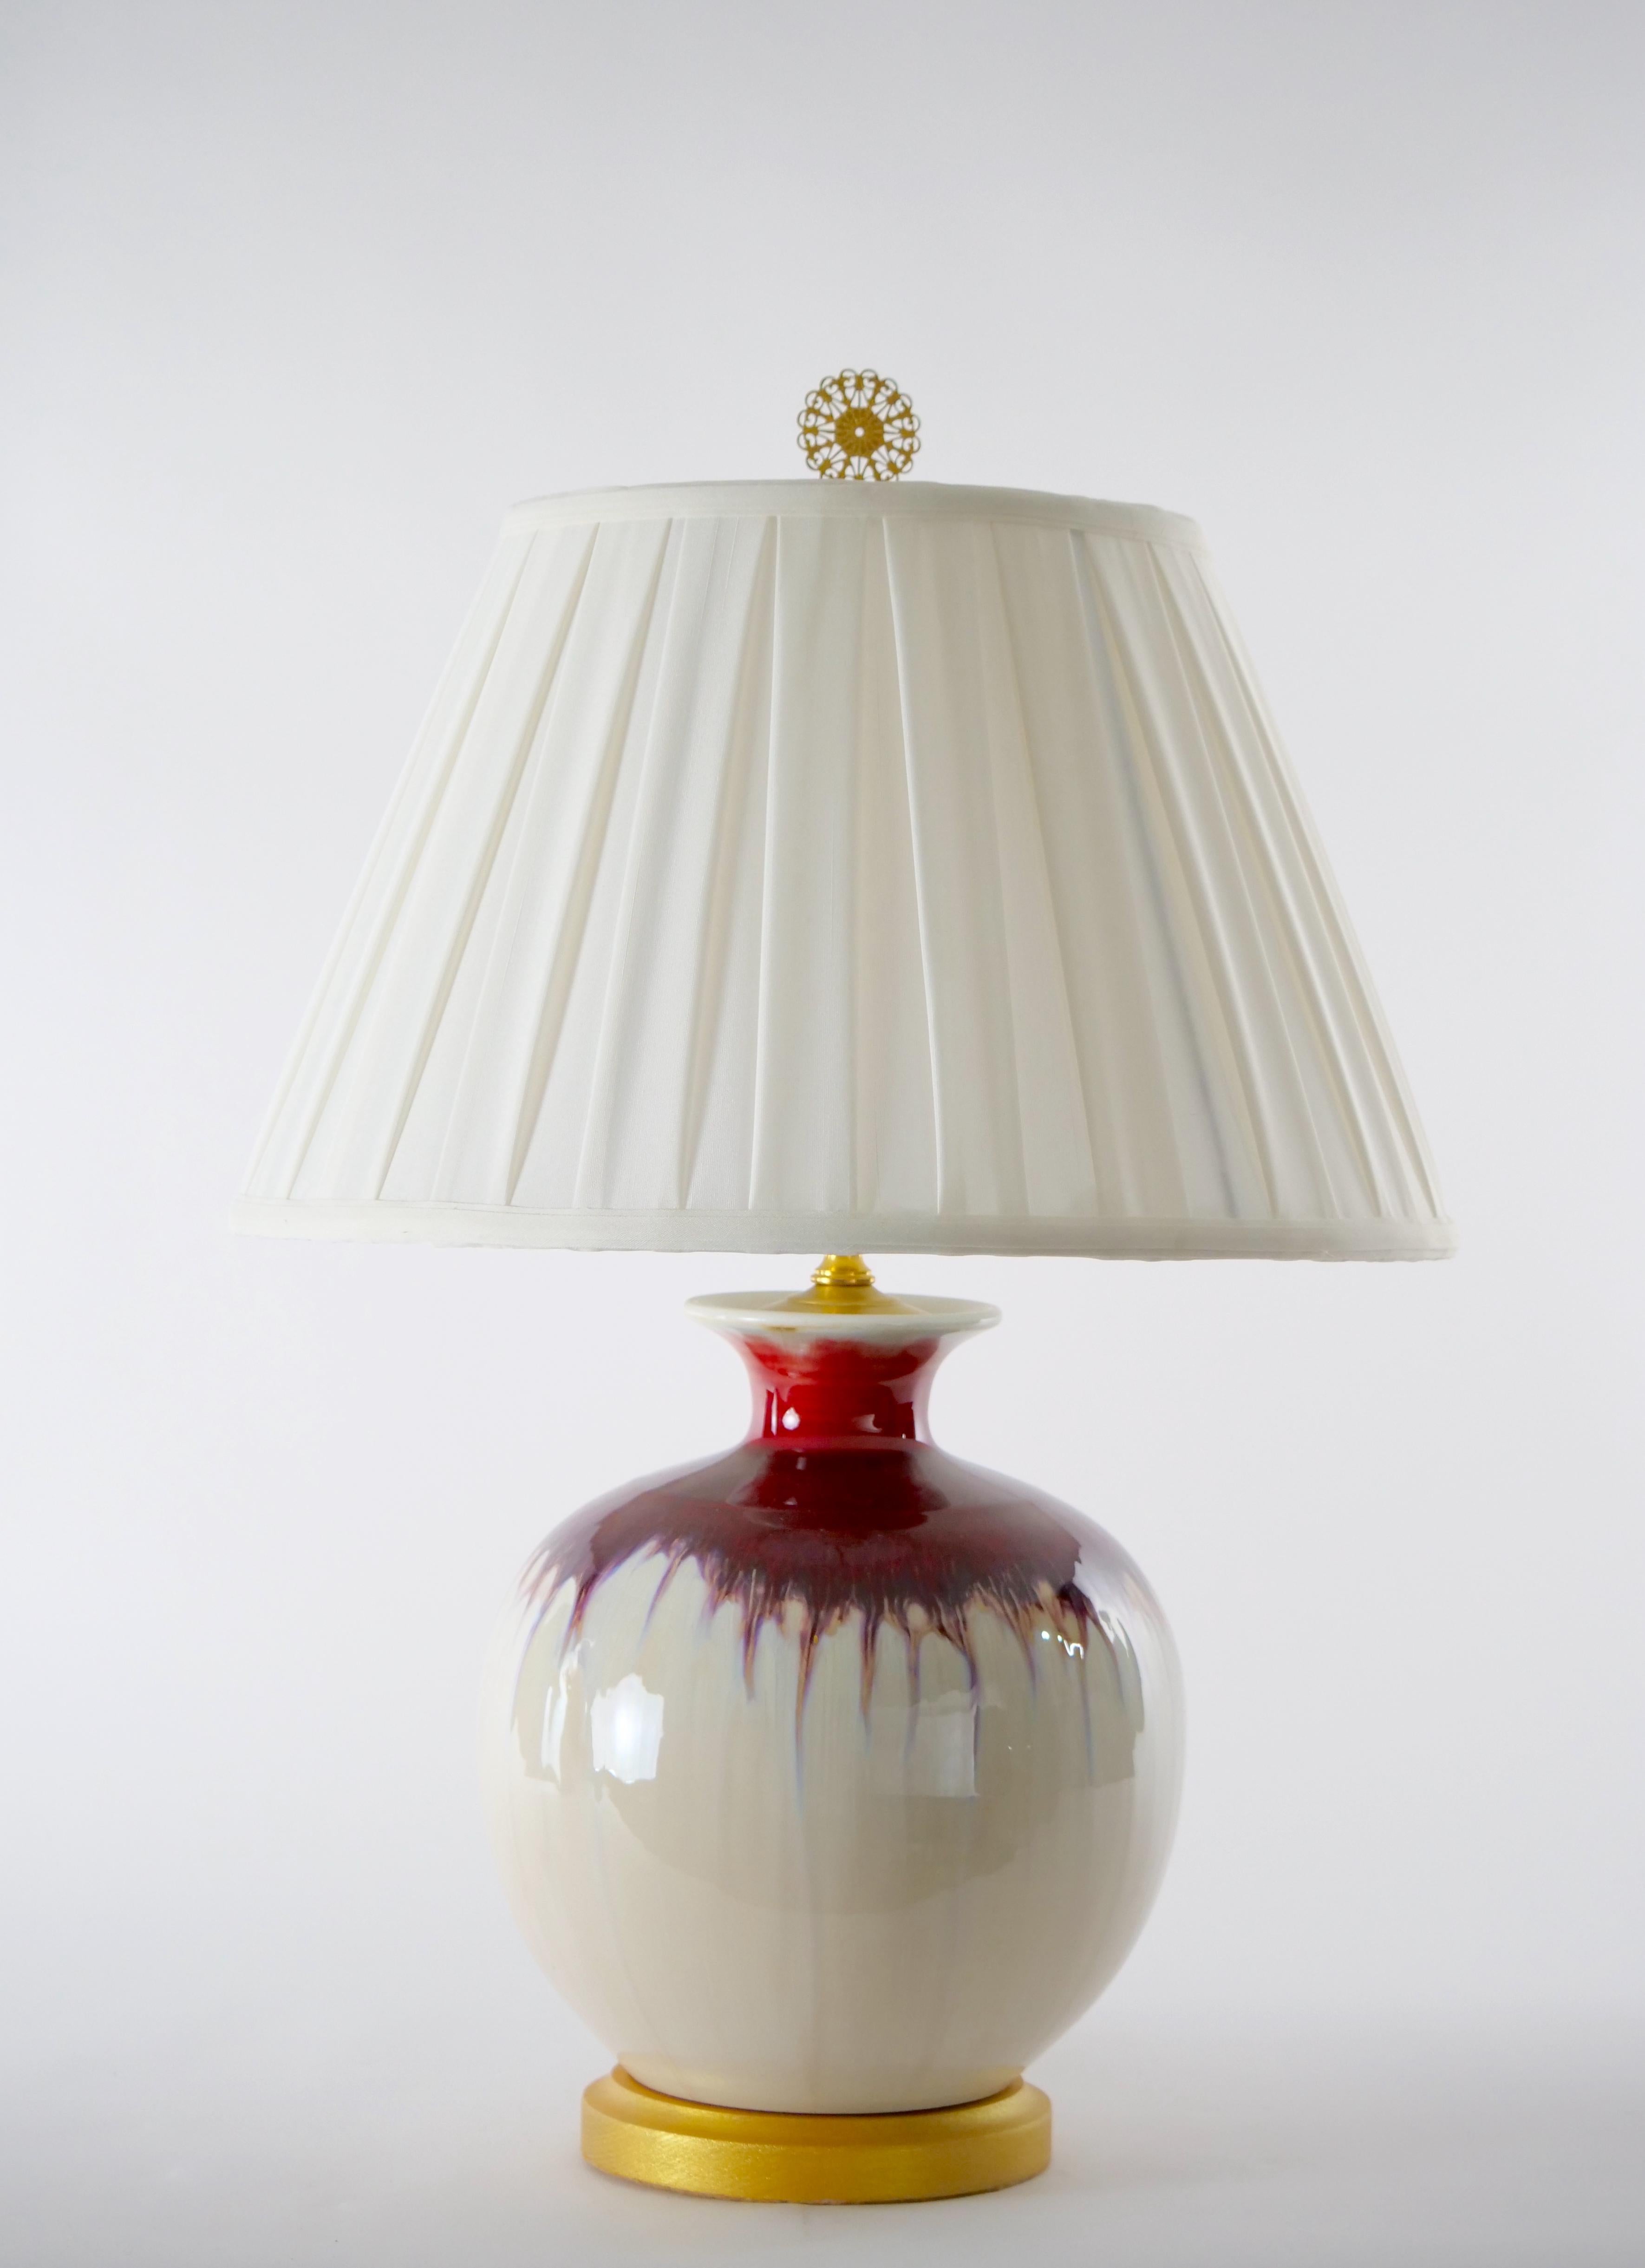 20. Jahrhundert Flambe Porzellan Flasche Form Vase Tischlampe mit vergoldetem Holz Basis. Jede Lampe hat eine leuchtend rote und beigefarbene Glasur in einer flaschenförmigen Form mit ausgestelltem Hals, die auf einem runden vergoldeten Holzsockel